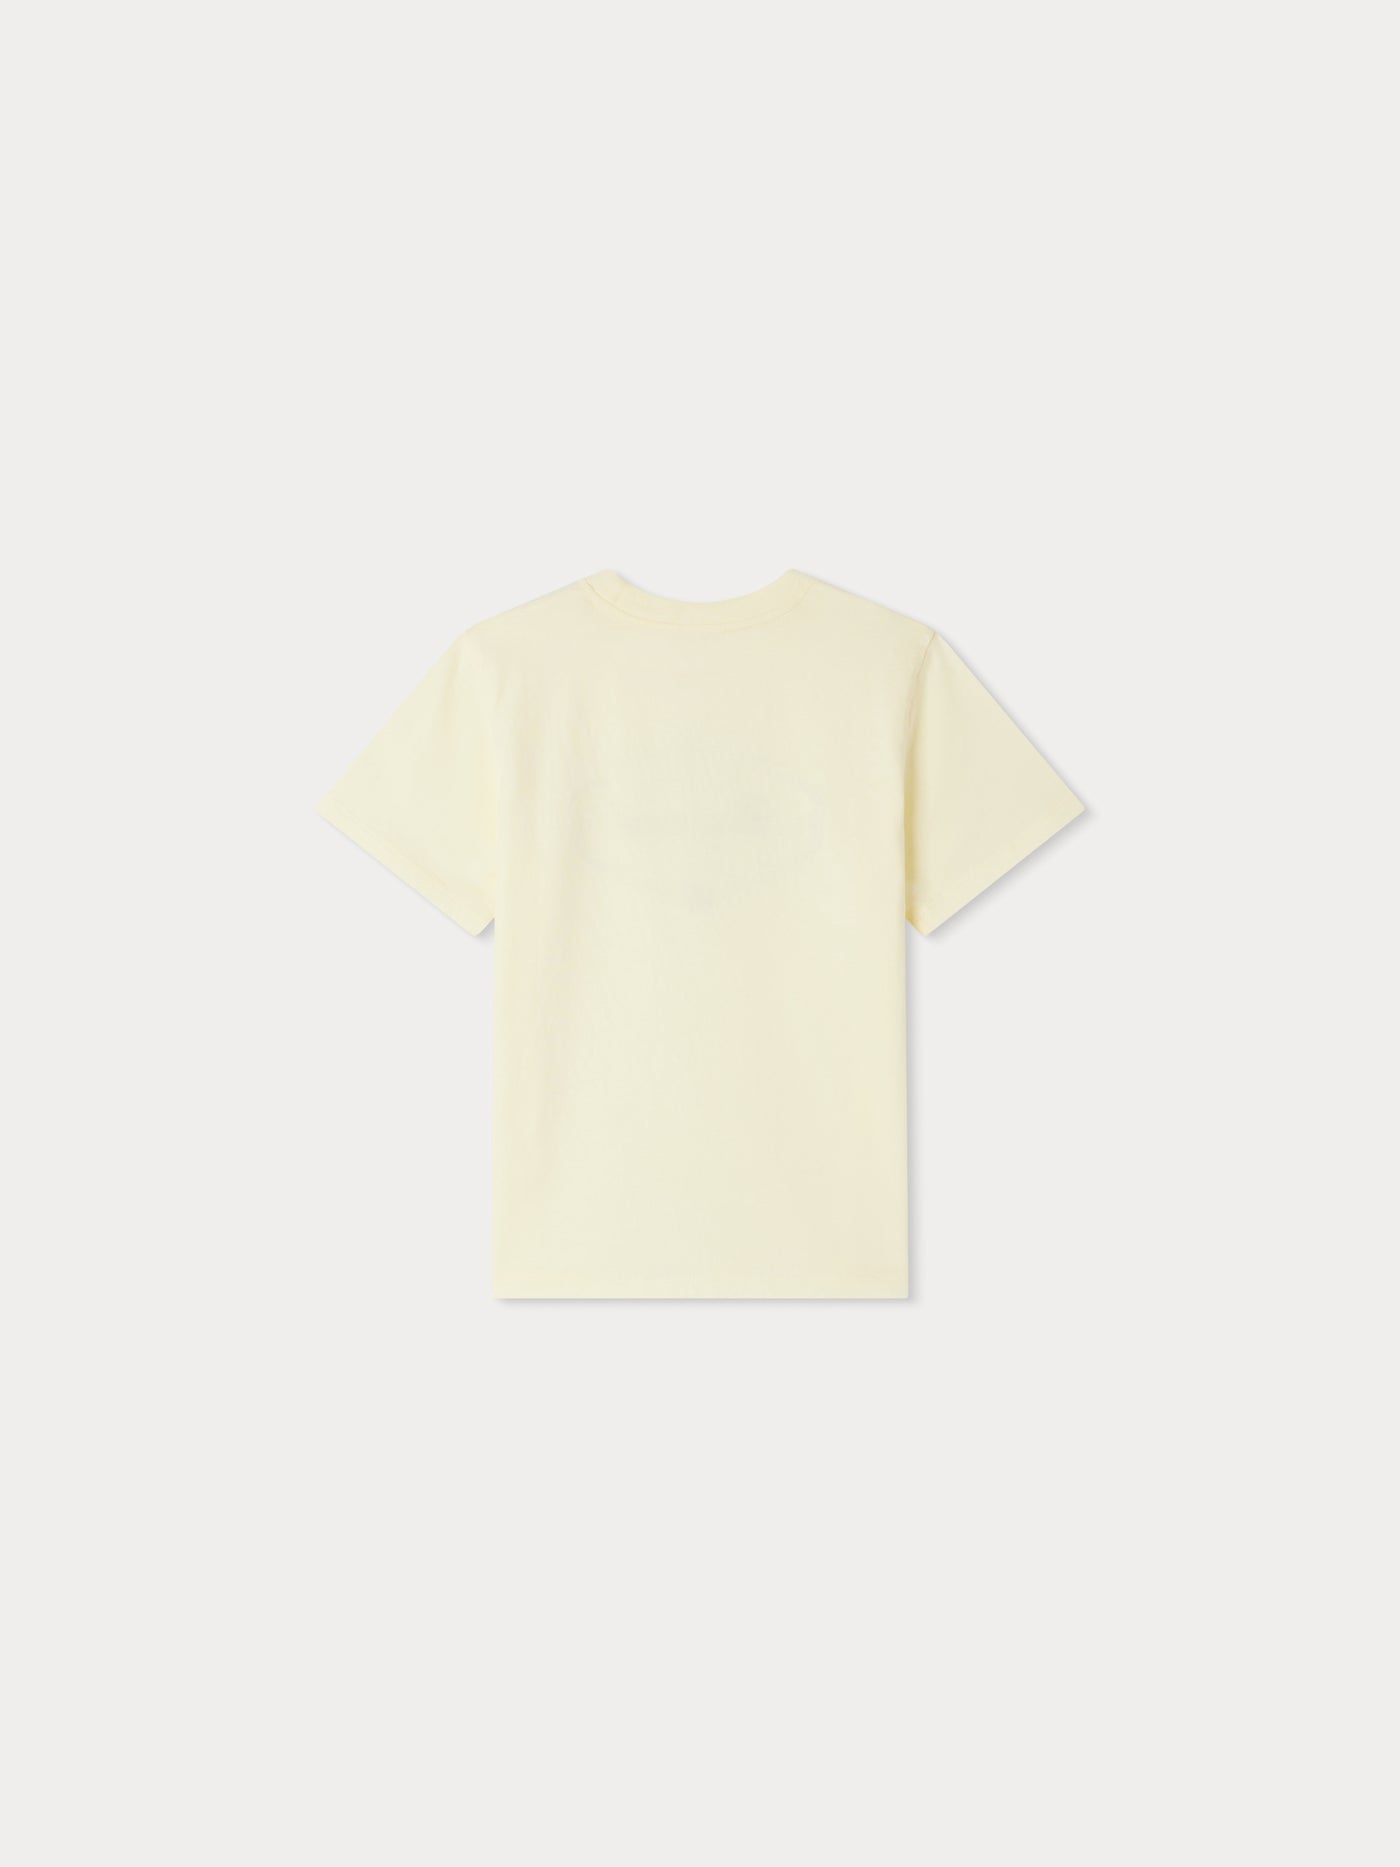 Thida T-shirt yellow